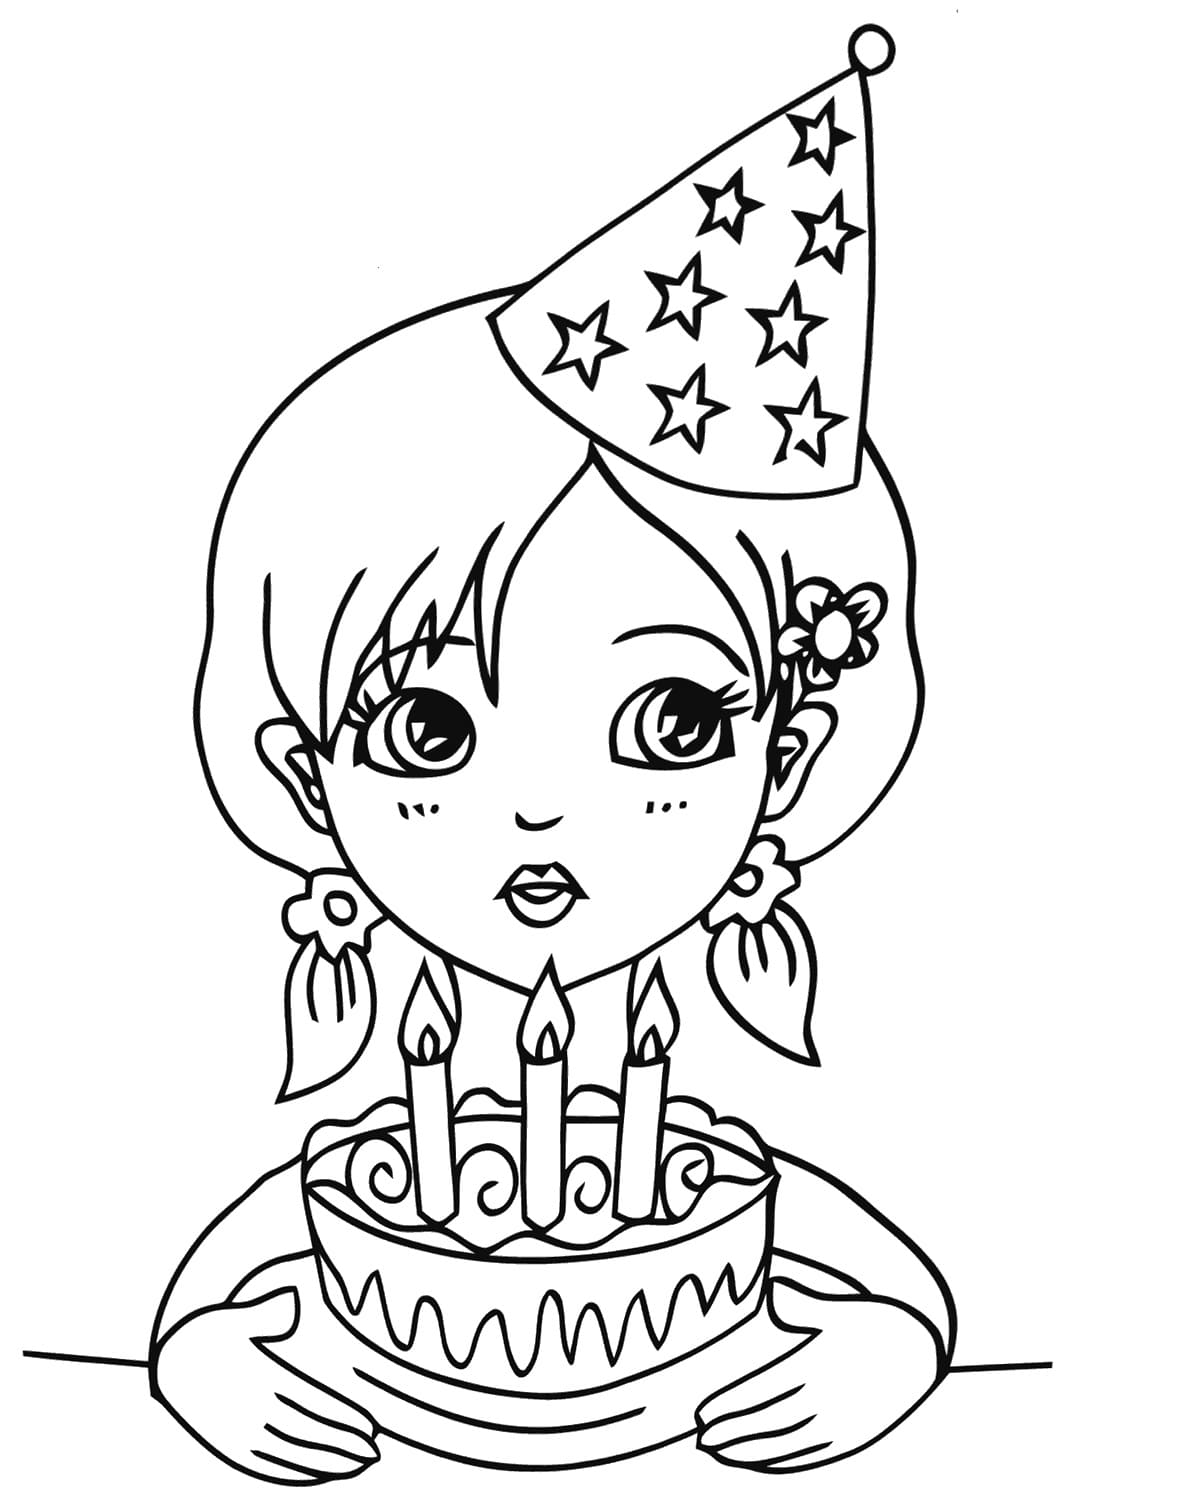 דף צביעה ליום הולדת גיל שלוש עם ילדה שמחזיקה עוגה חגיגית